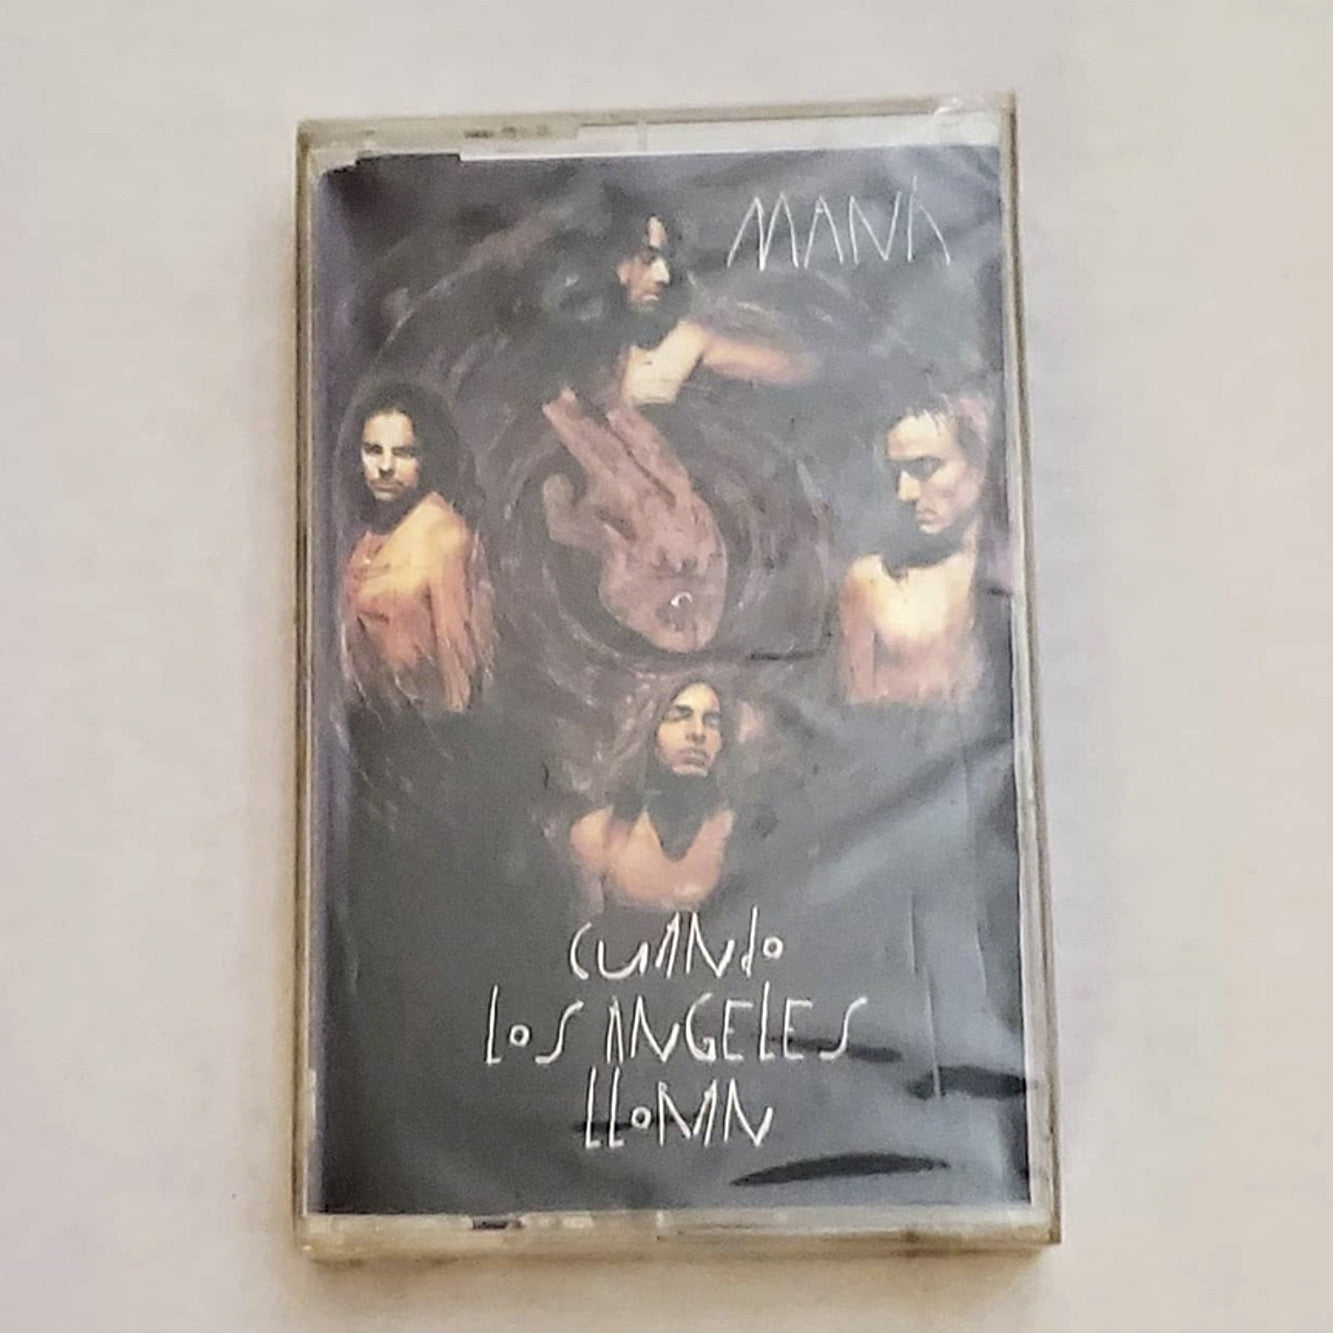 Maná - Cuando Los Angeles Lloran (Cassette)